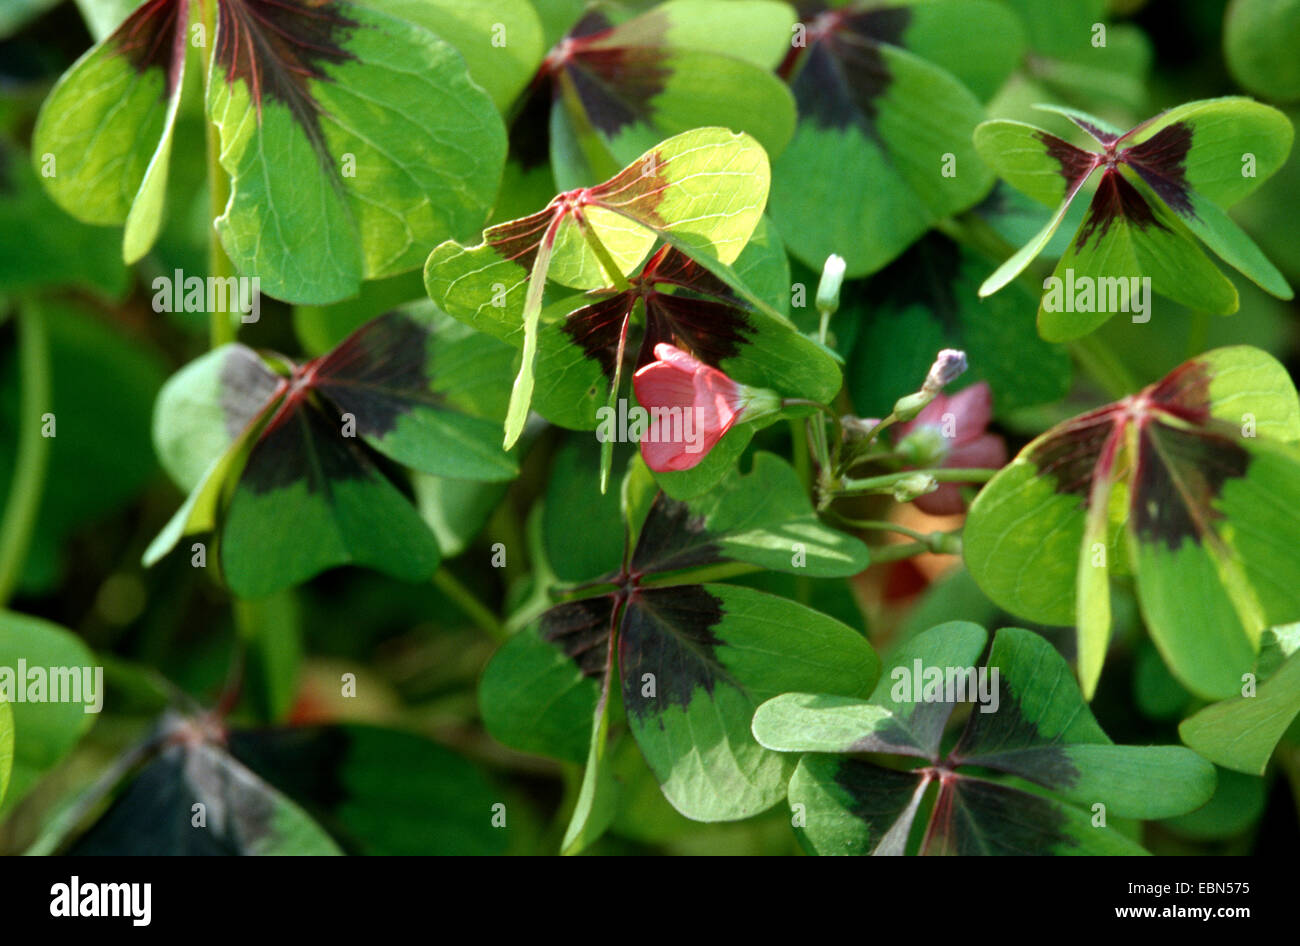 four-leafed clover (Oxalis tetraphylla, Oxalis deppei), habit Stock Photo